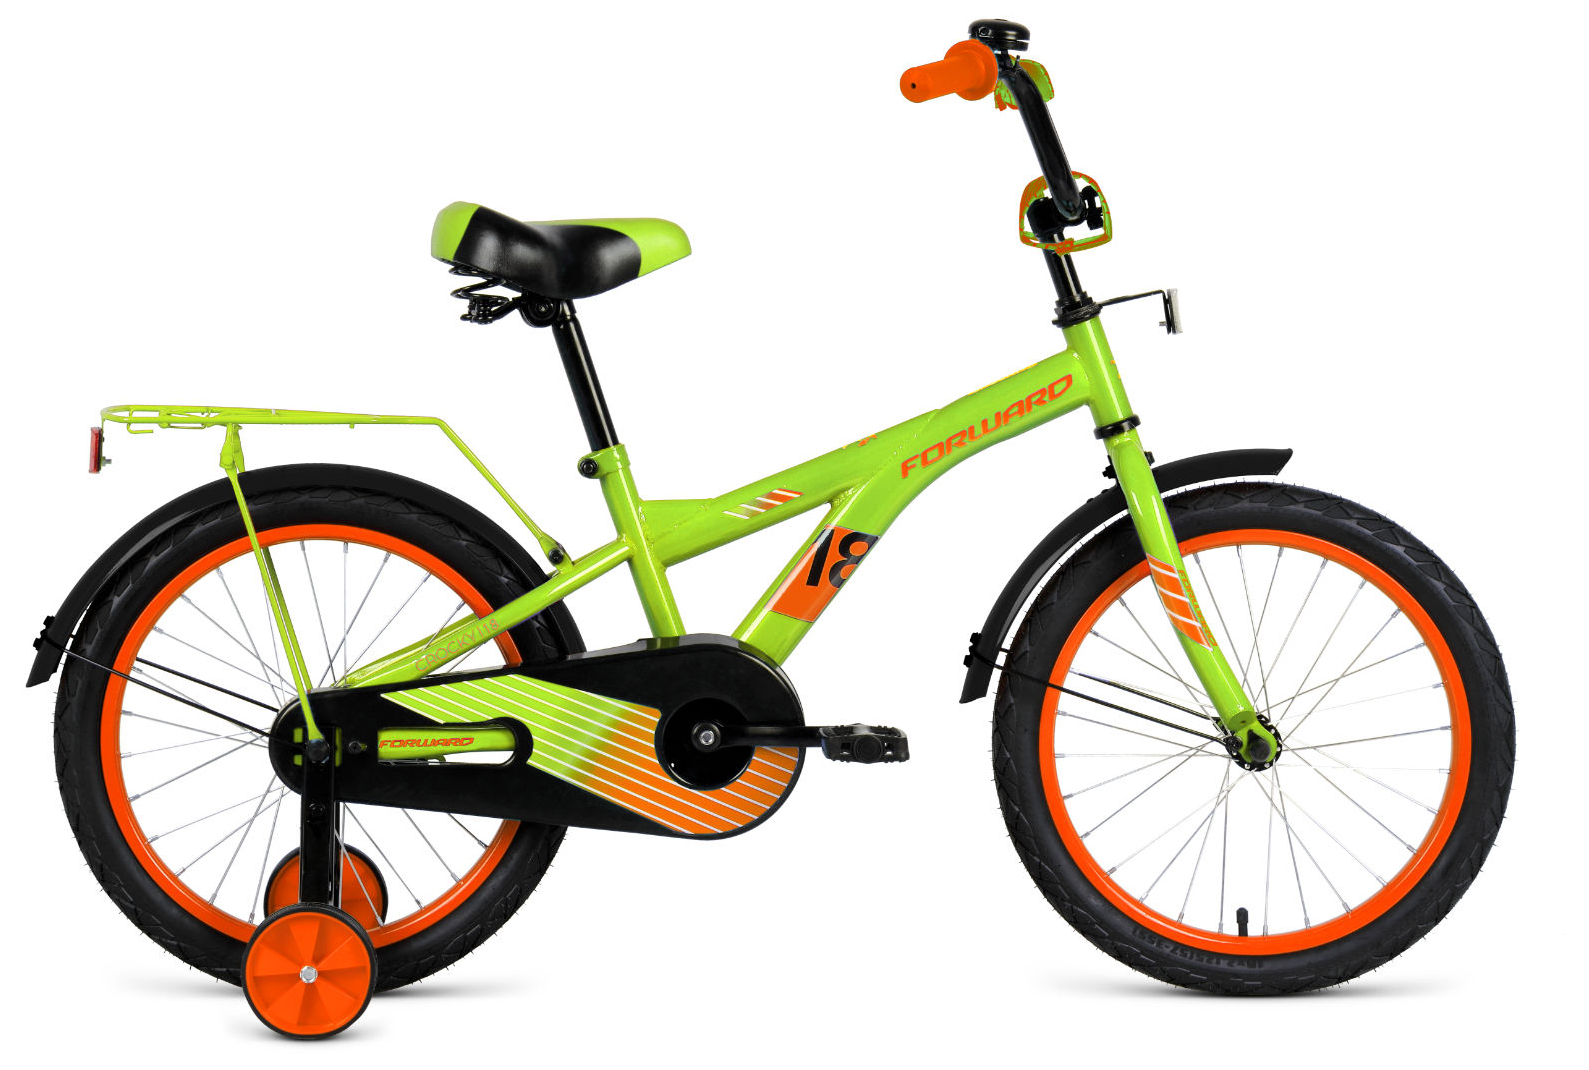  Отзывы о Детском велосипеде Forward Crocky 18 (2021) 2021